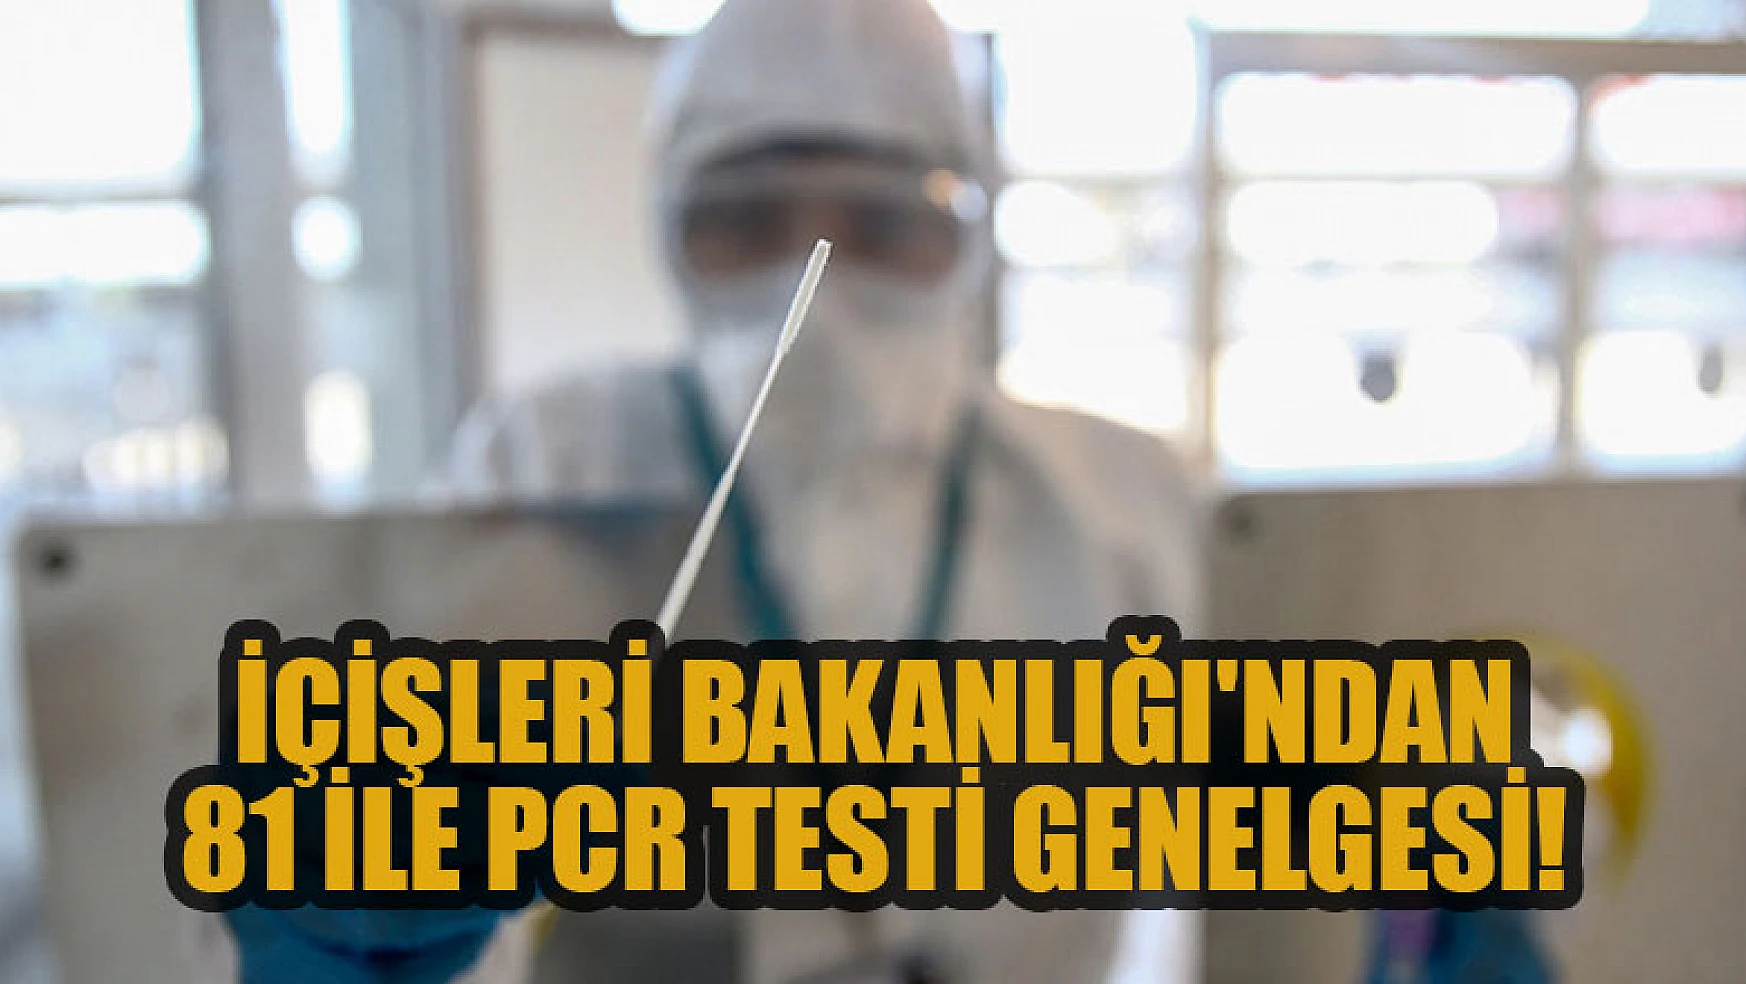 İçişleri Bakanlığı'ndan 81 ile PCR testi genelgesi!